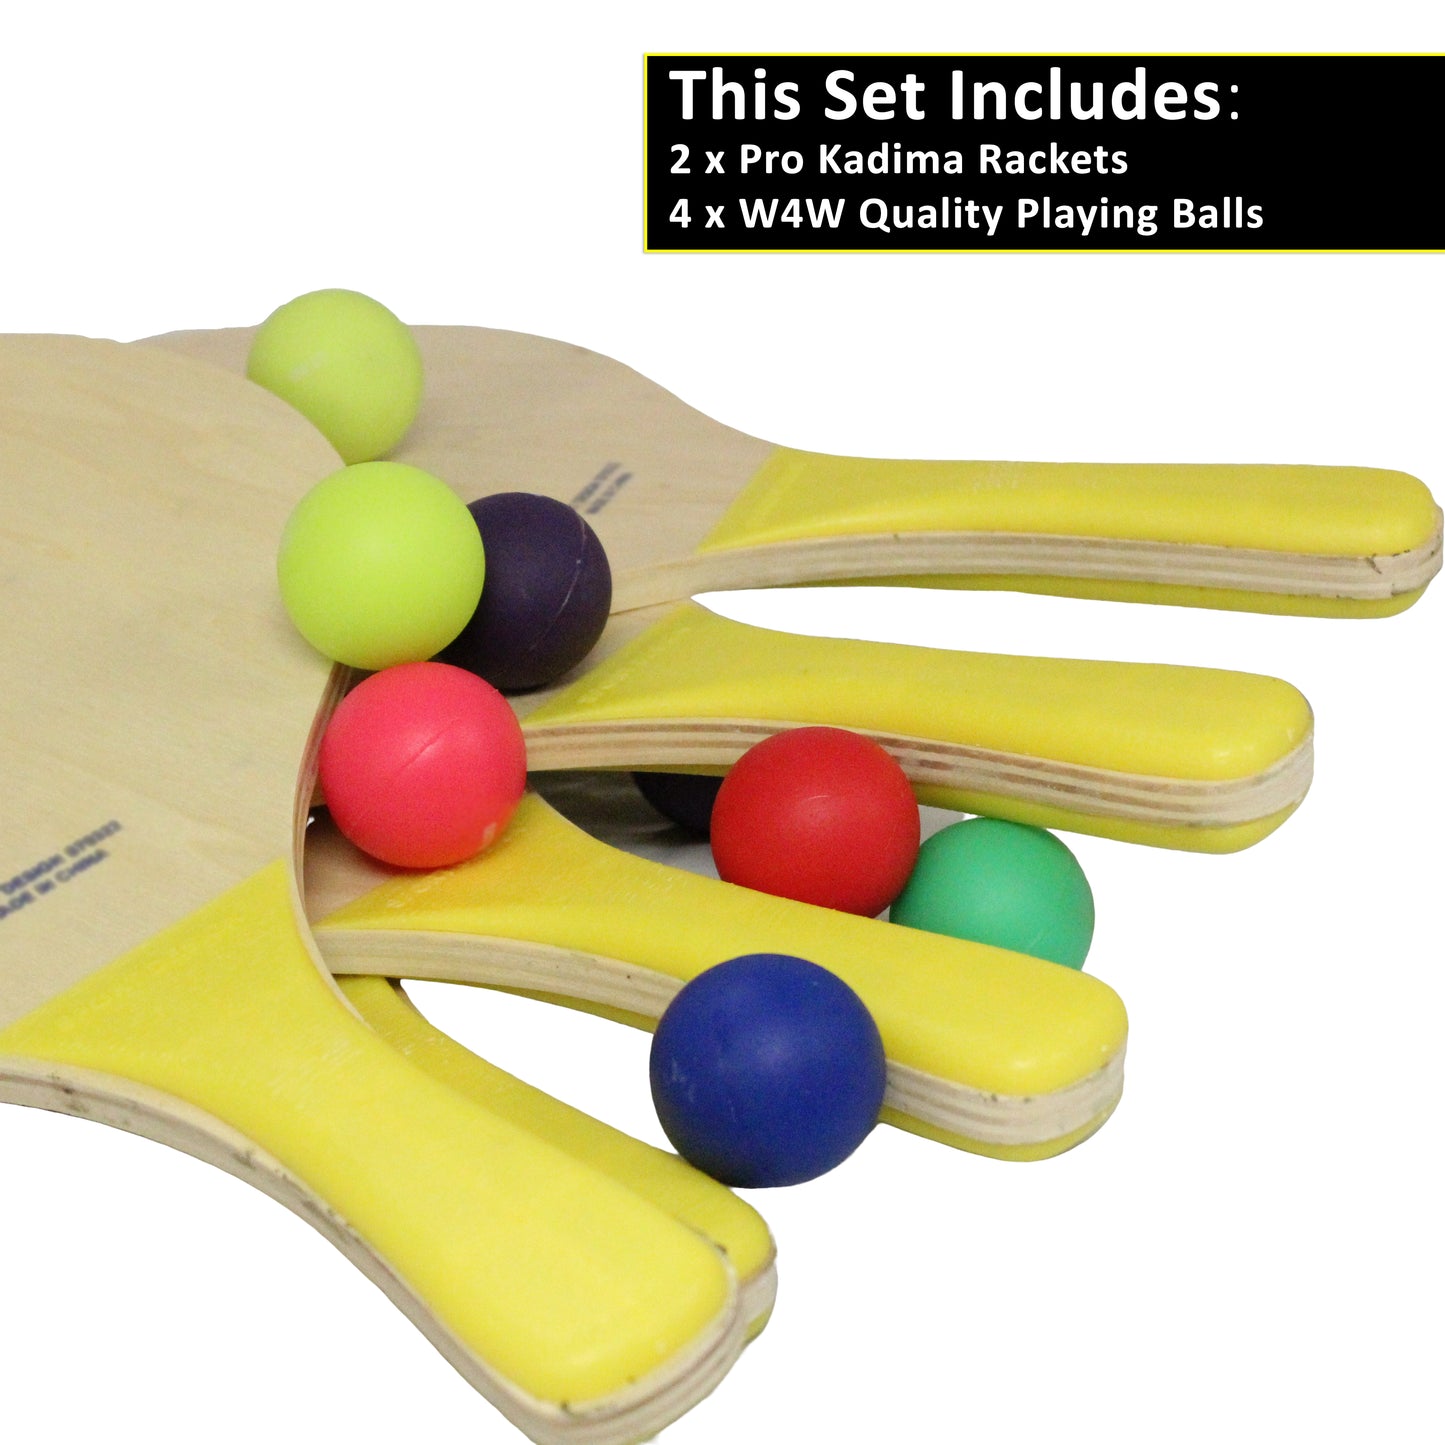 W4W Sports Design Pro Kadima Matkot 2 Wood Paddles & 1 Ball included + 3 Extra balls by W4W